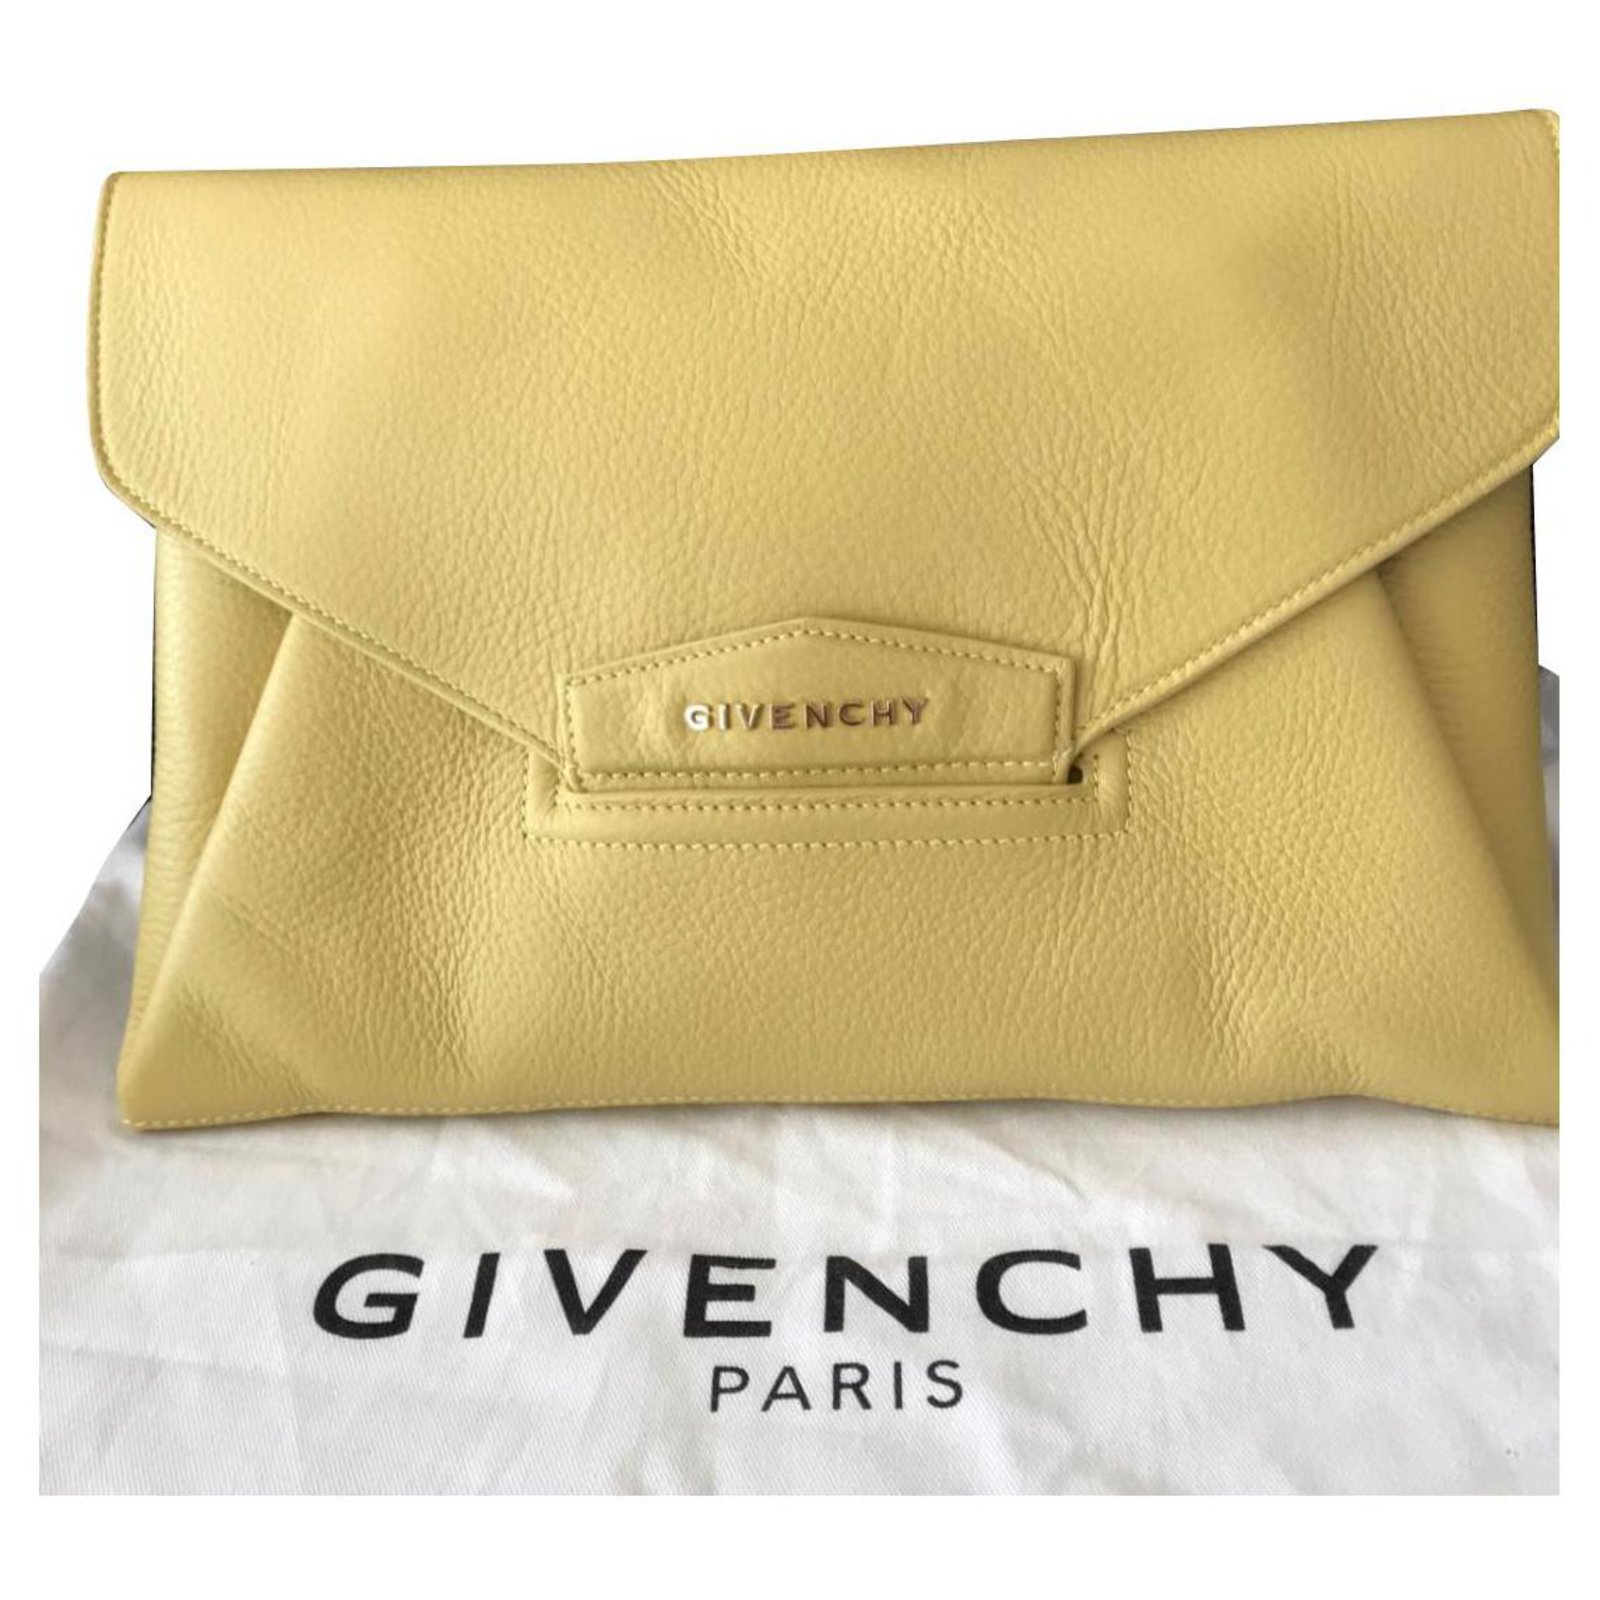 Givenchy, Bags, Givenchy Antigona Envelope Clutch